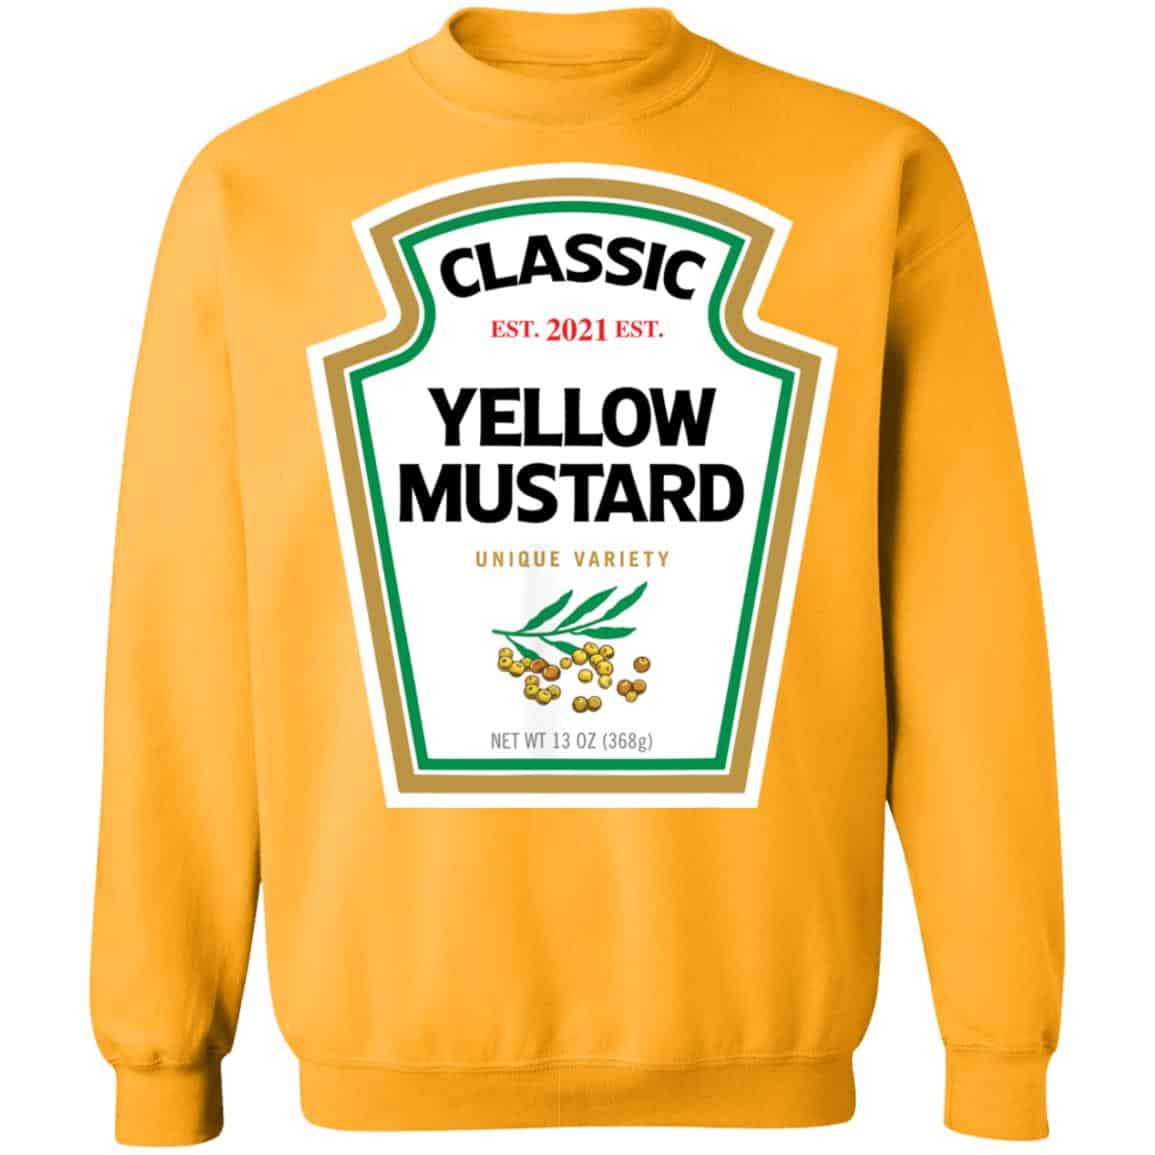 Yellow Mustard Diy Halloween Costume Shirt 2